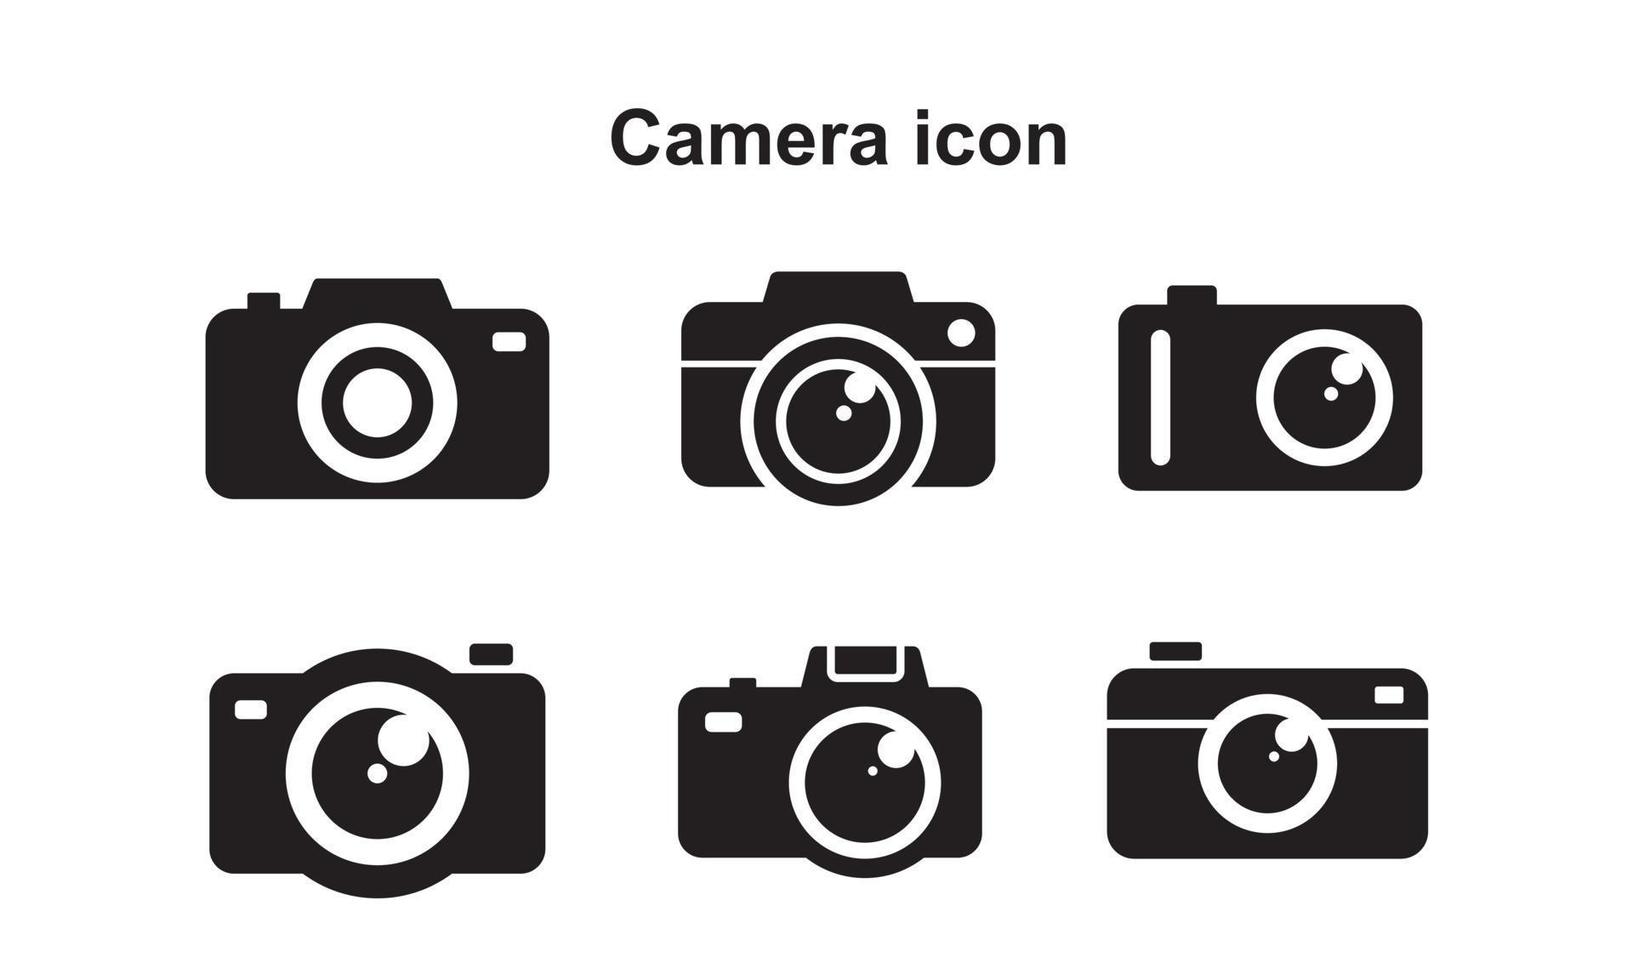 plantilla de icono de cámara editable en color negro. icono de cámara símbolo ilustración vectorial plana para diseño gráfico y web. vector